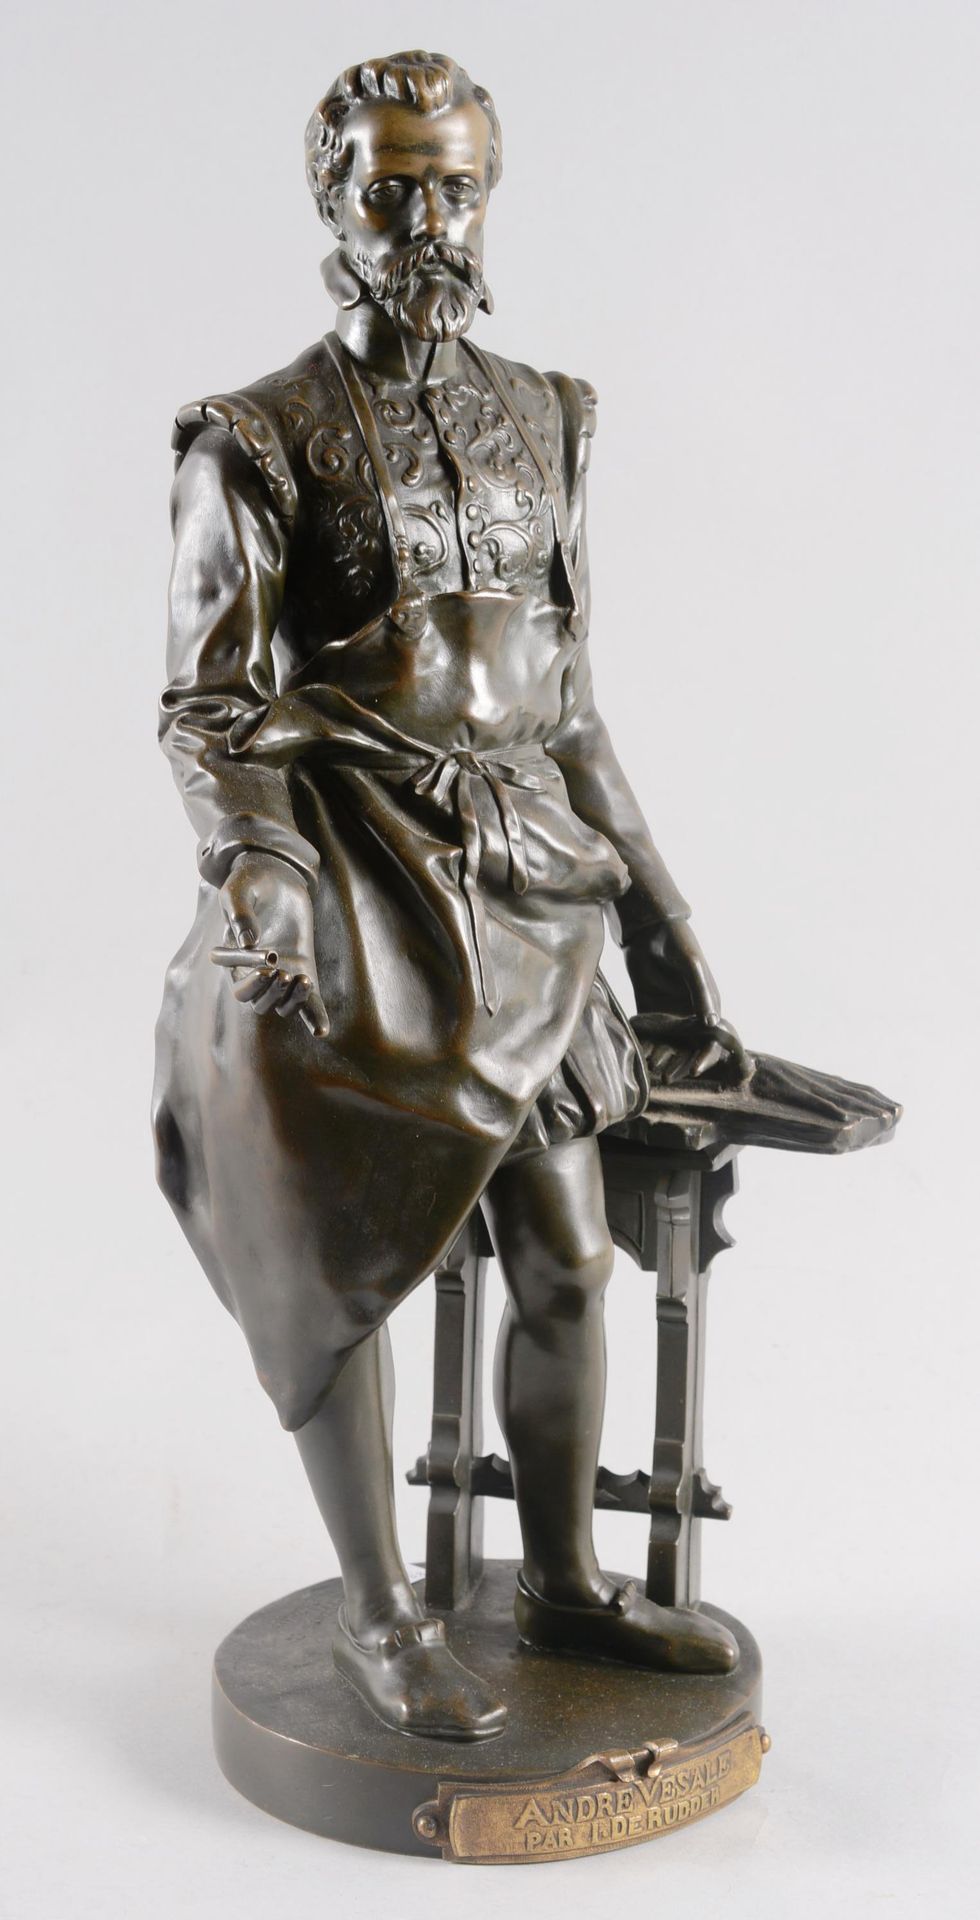 Isidoor DE RUDDER (1855-1943) 伊西多尔-德-鲁德(1855-1943)

"André Vésale"。

青铜，棕色铜锈。由H.&hellip;